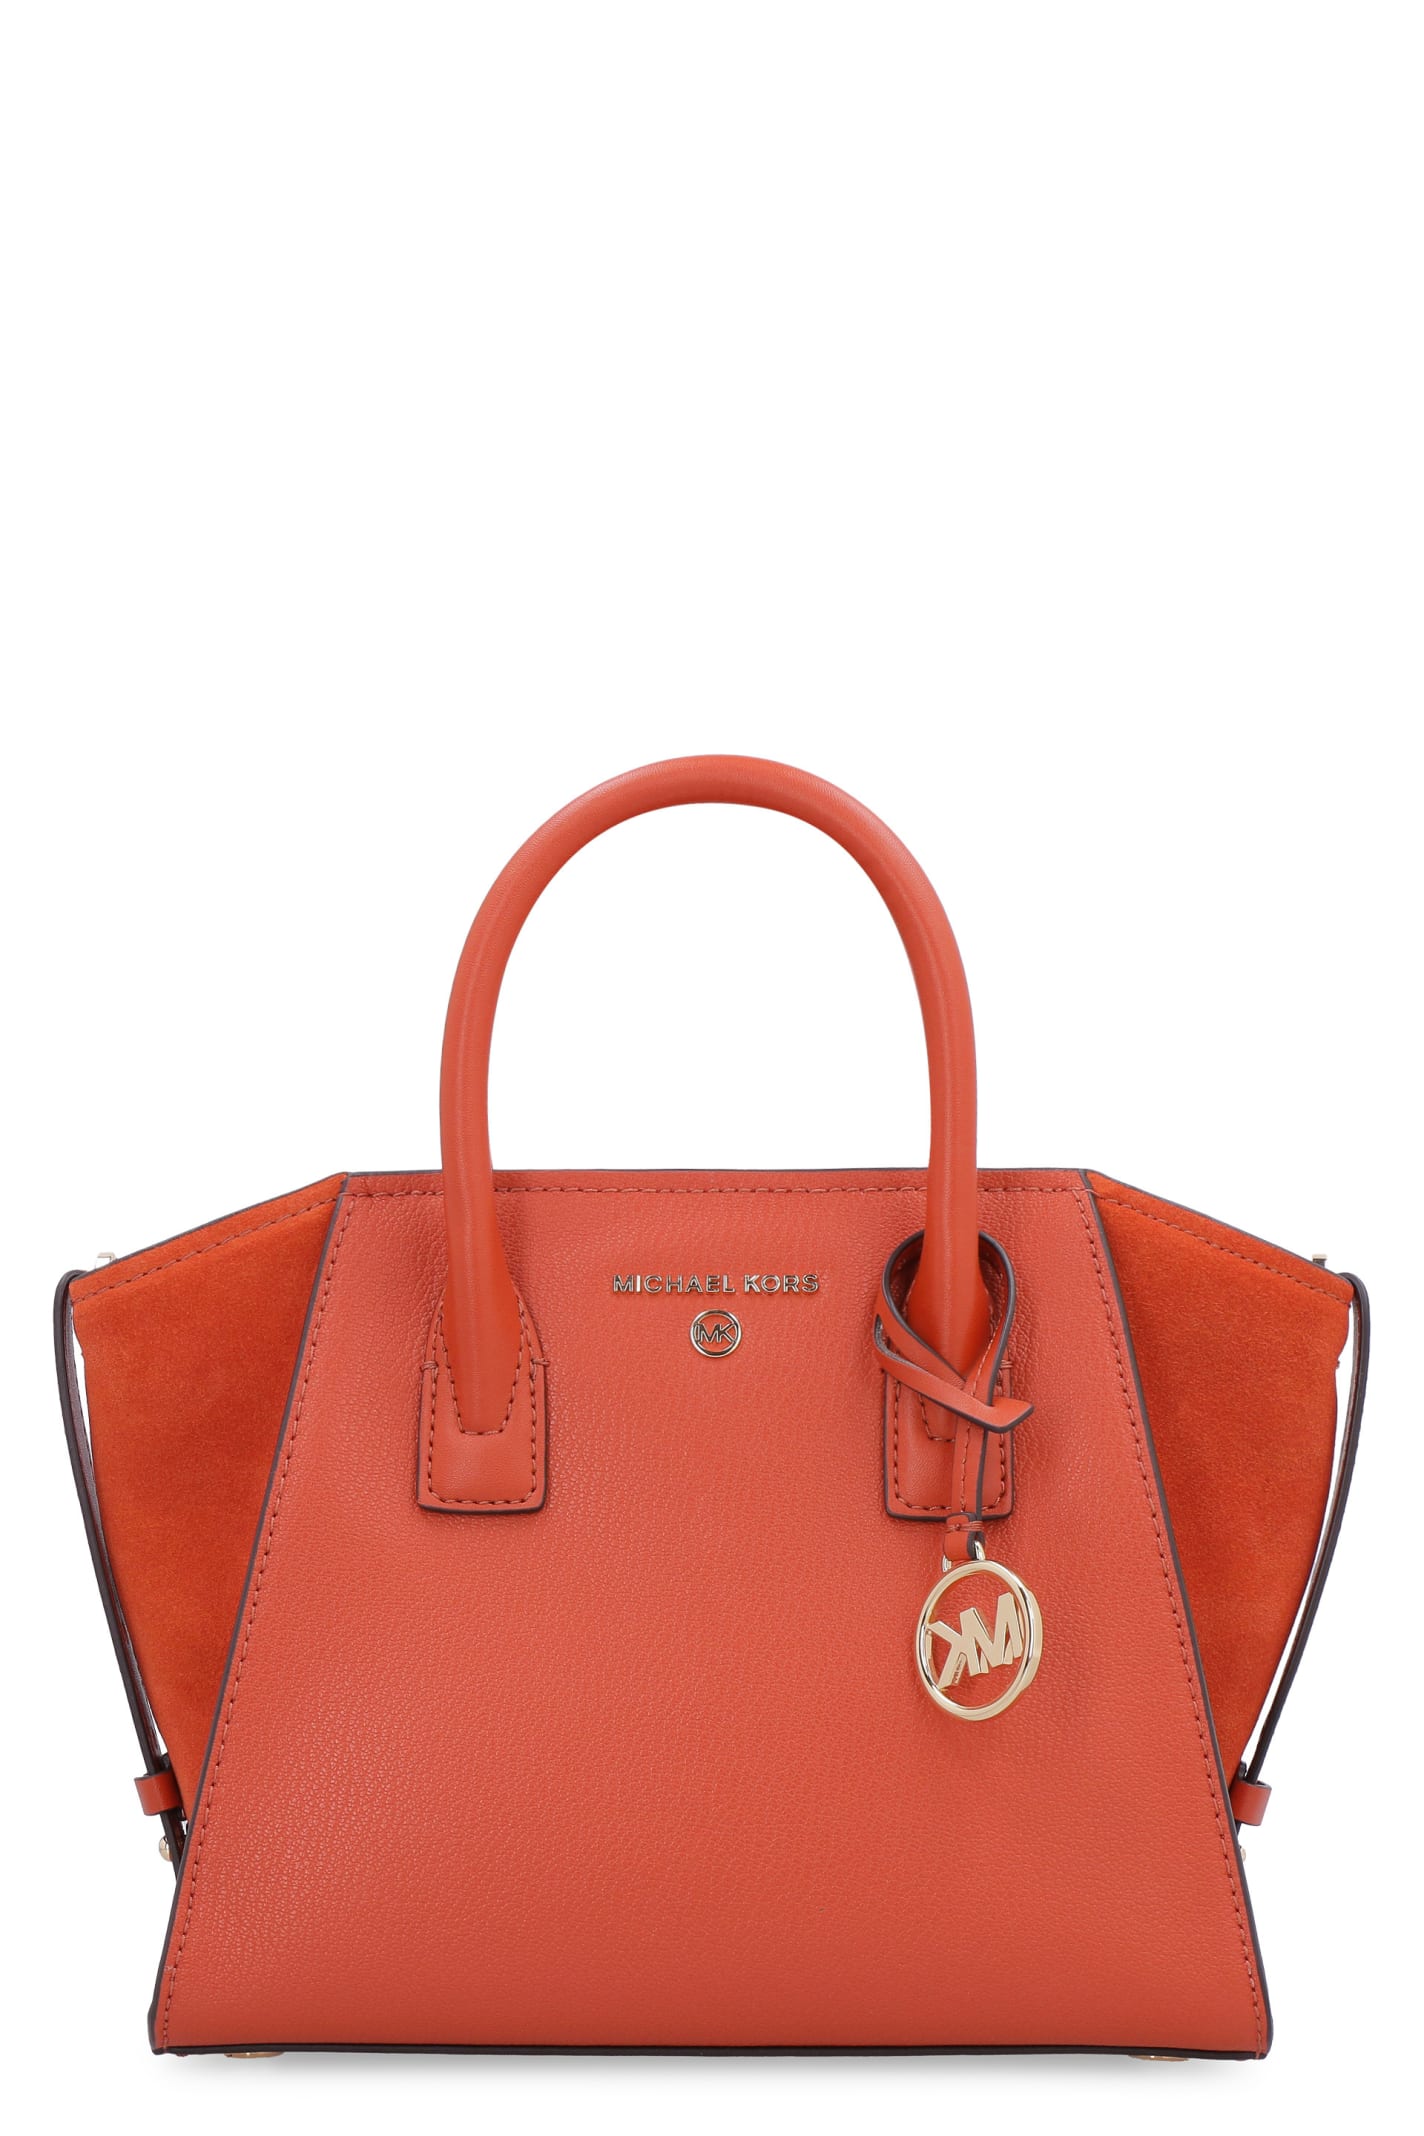 Michael Kors Avril Small Leather Handbag